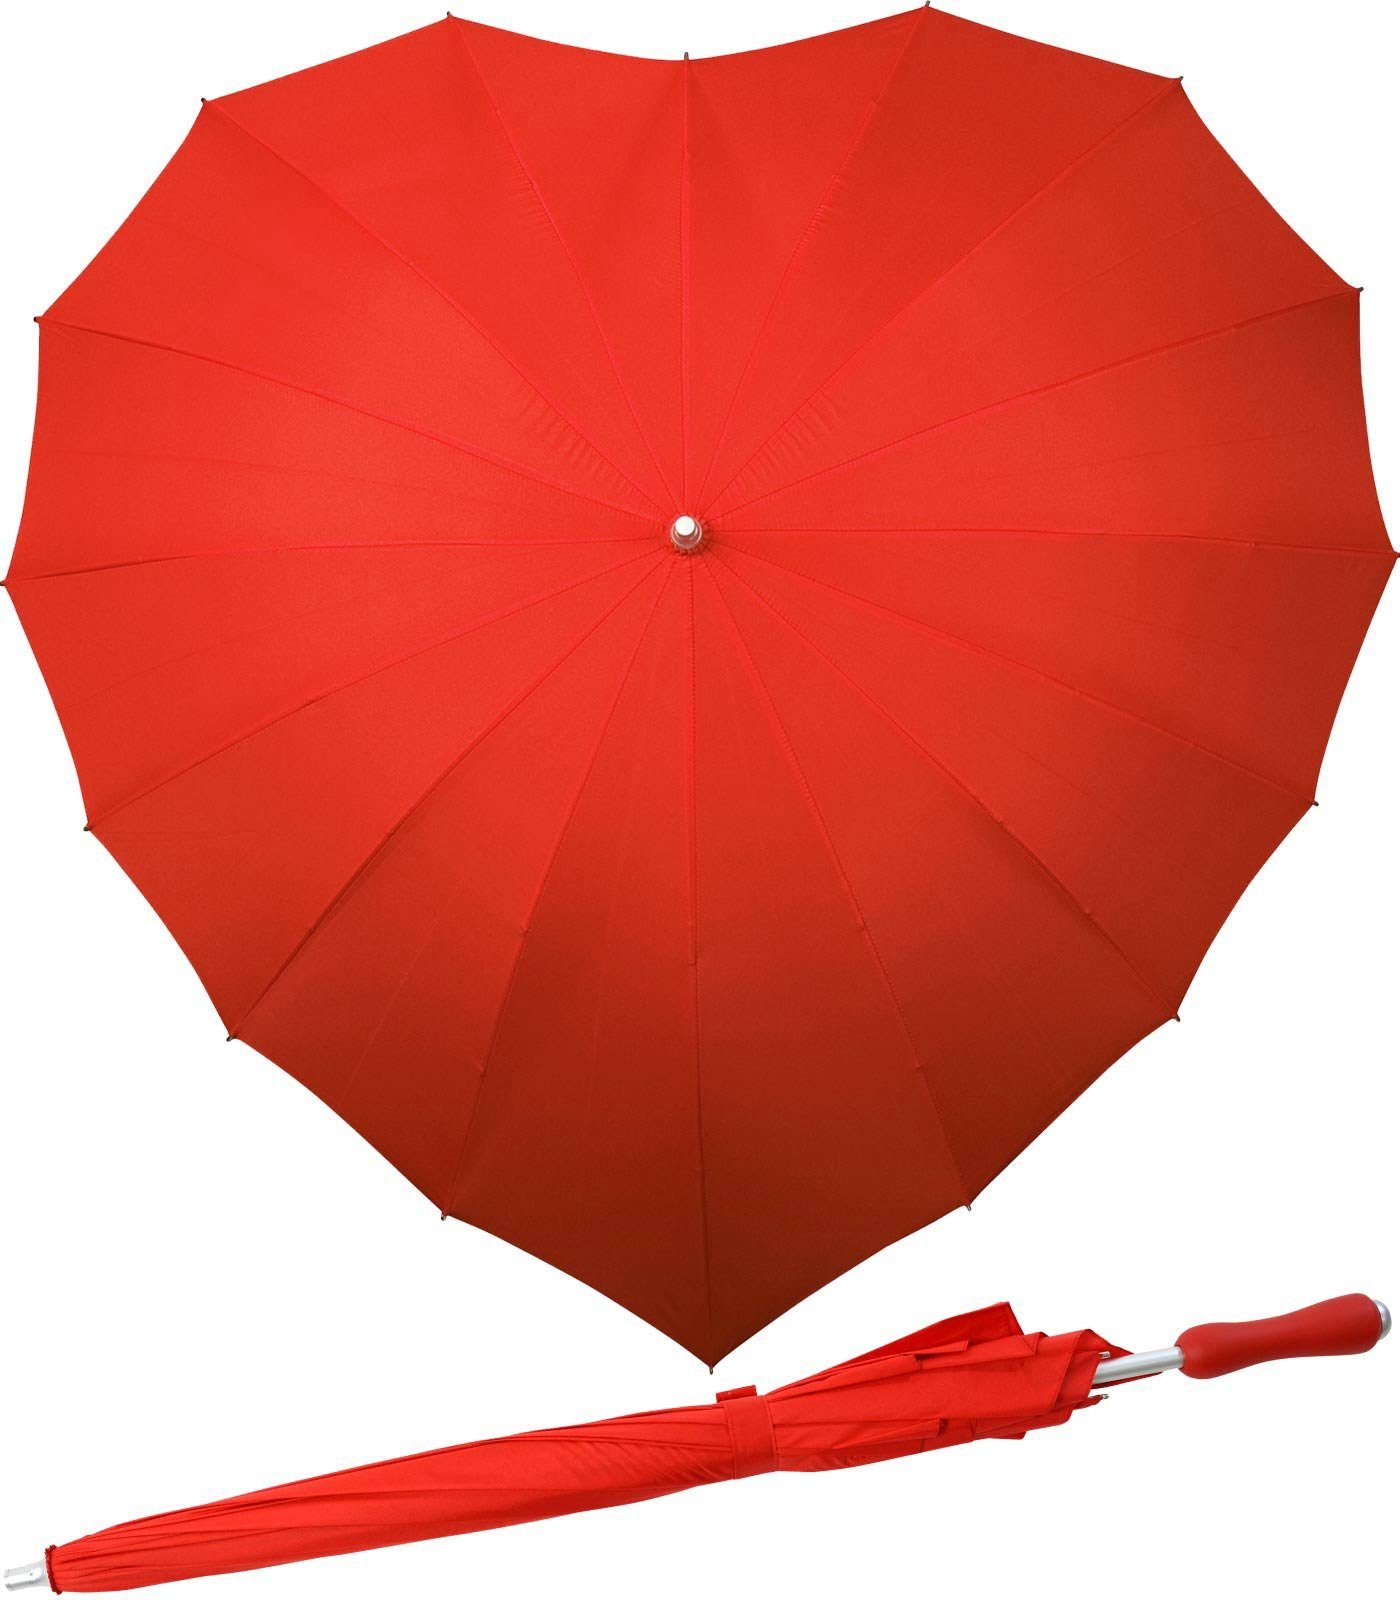 Impliva Langregenschirm Regenschirm 16-teilig in Herzform Hochzeitsschirm, herzförmiger Regenschirm